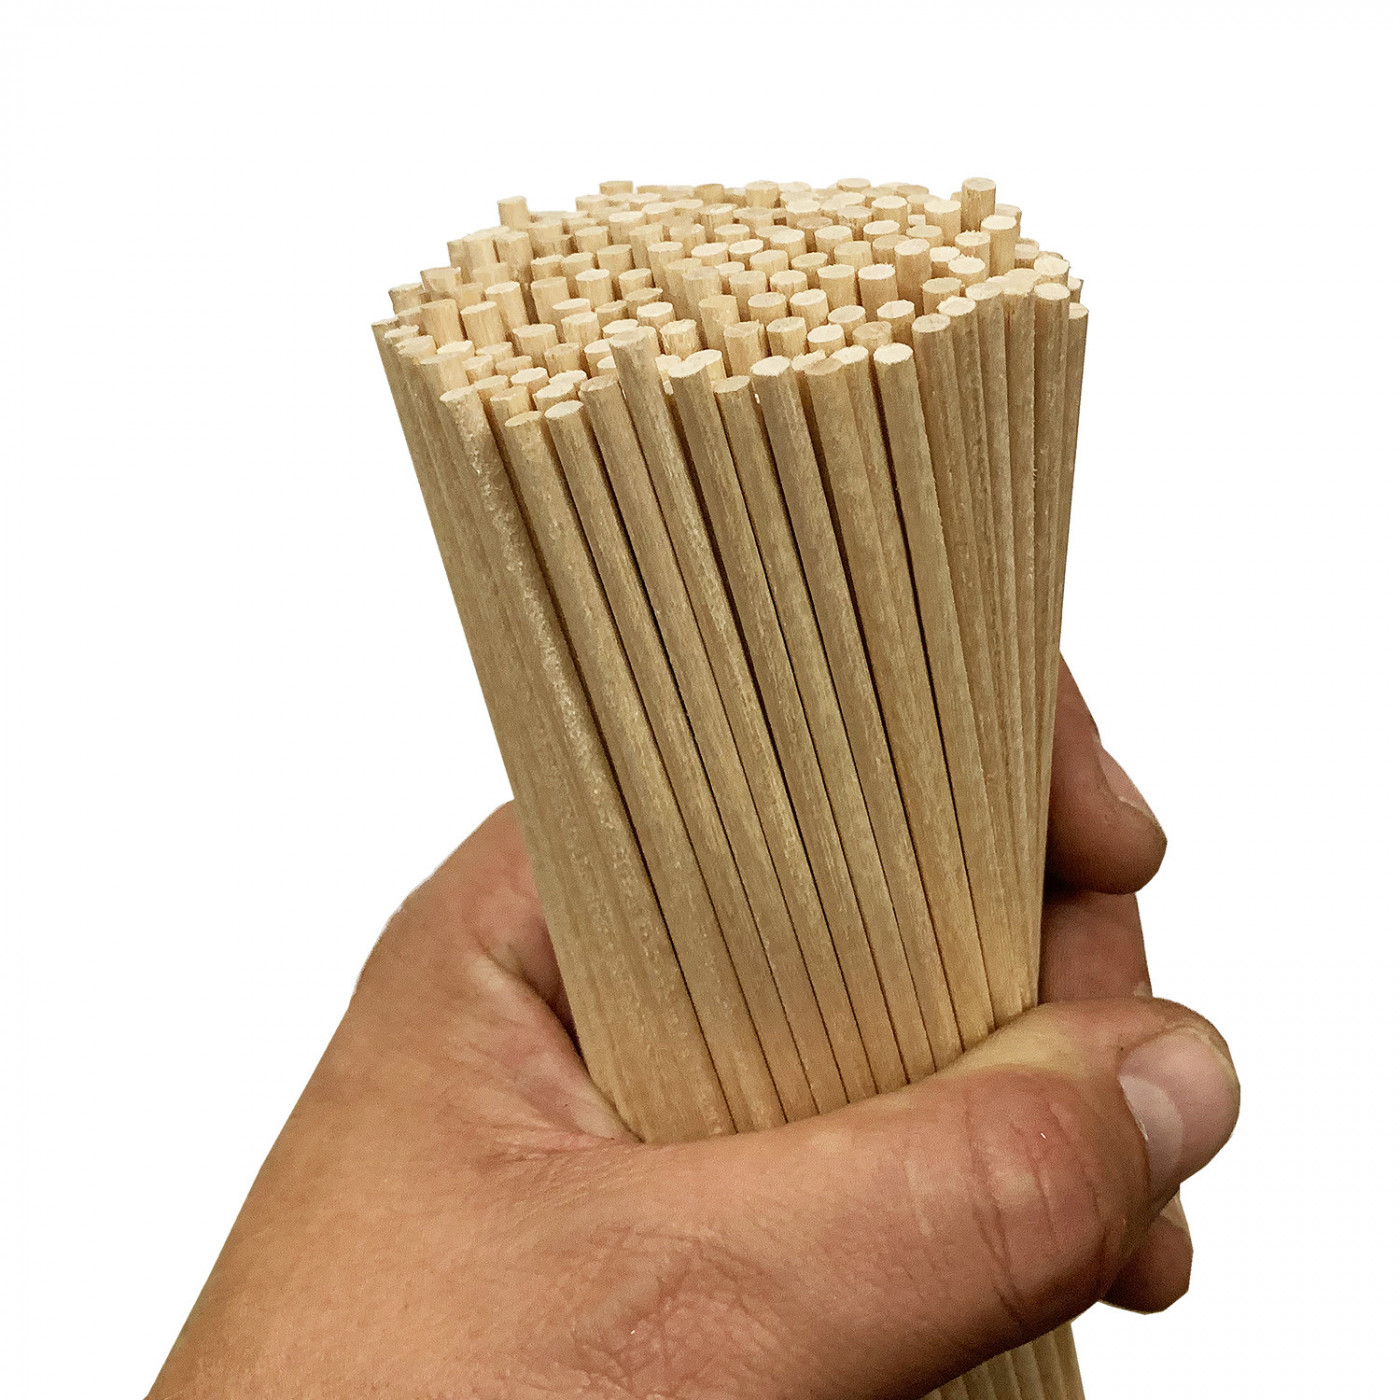 Set of 400 wooden sticks (3.5 mm x 20 cm, birch wood, pointed)